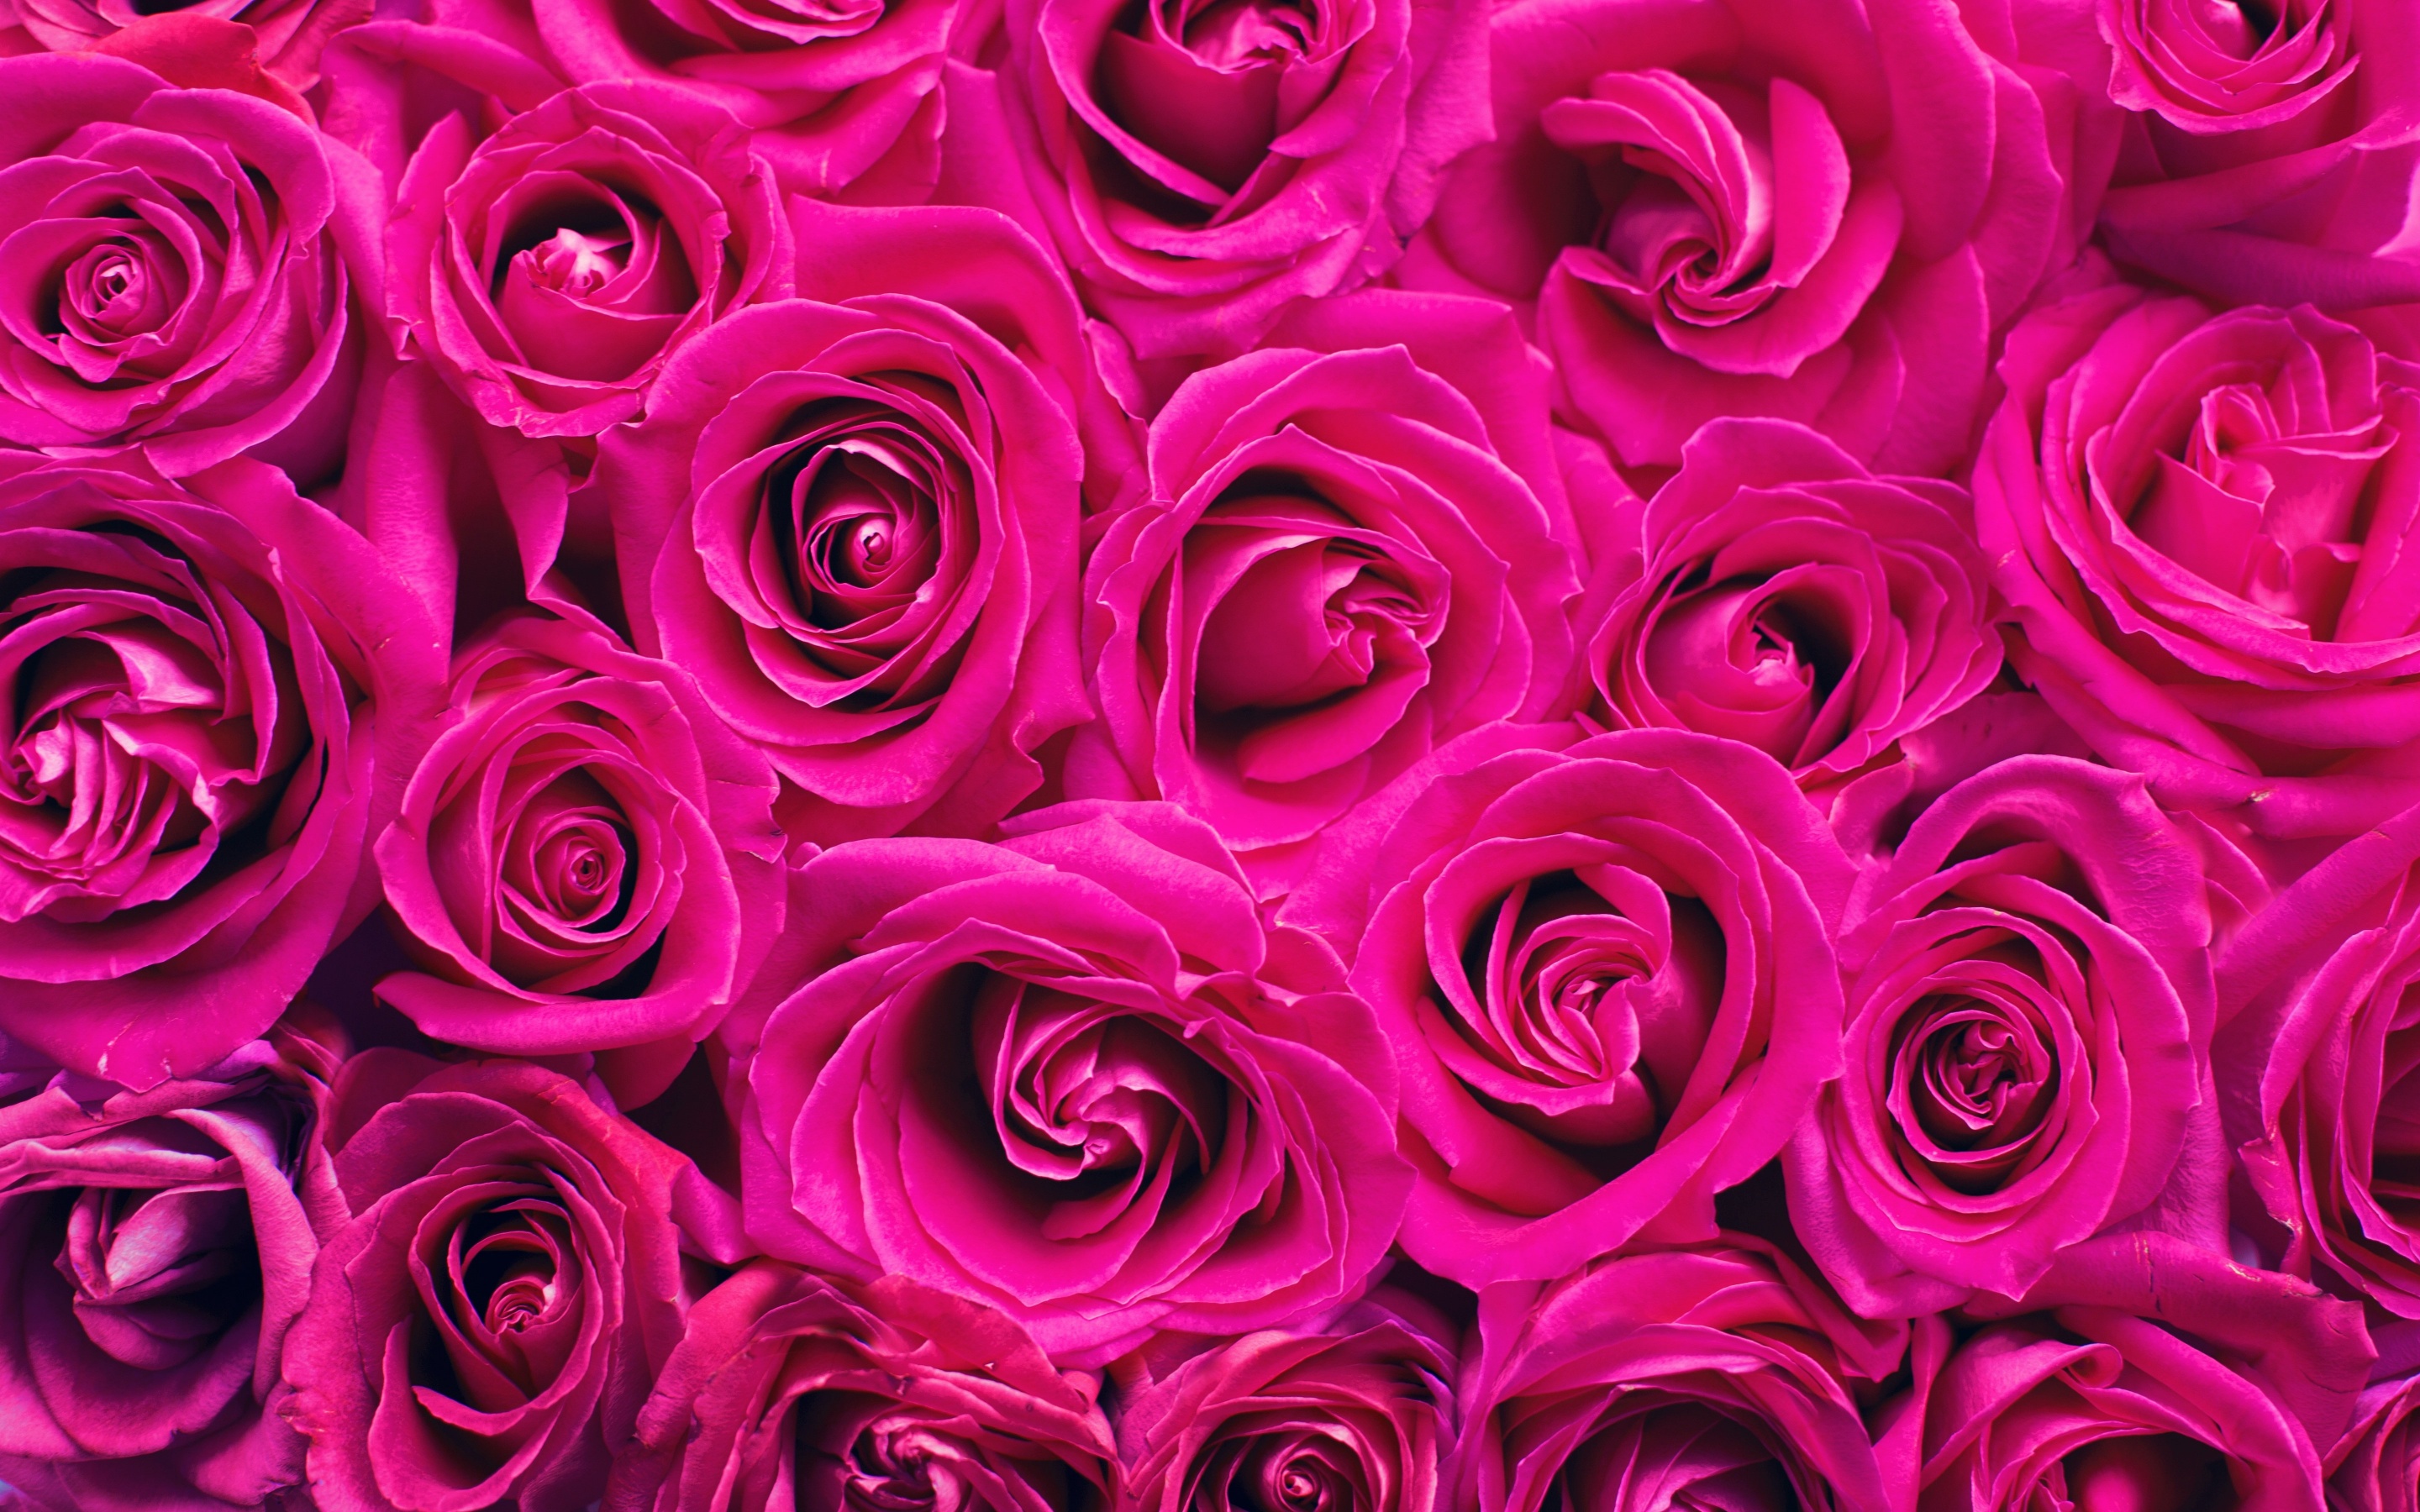 Hình nền hoa hồng 4K màu hồng: Một bức tranh siêu nét với kích thước 4K cùng tông màu hồng ngọt ngào và những bông hoa hồng màu hồng đẹp tuyệt vời sẽ thổi một làn gió mới vào màn hình của bạn. Bộ hình này sẽ đem lại cho bạn một trải nghiệm tràn đầy màu sắc và tinh tế.